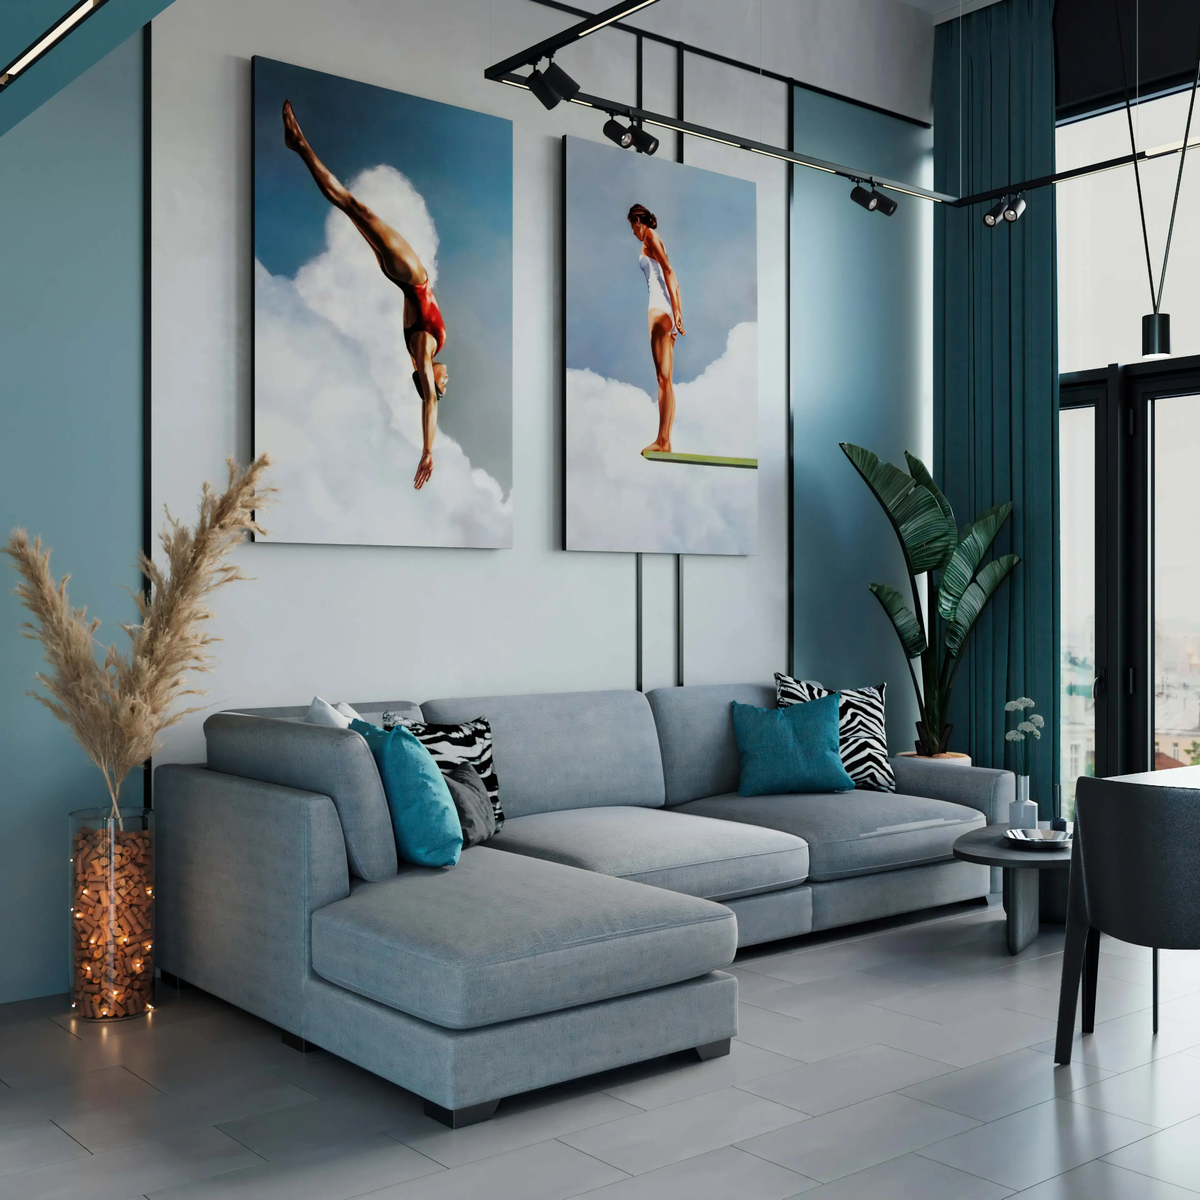 Многие квартиры в современных ЖК имеют очень высокие потолки и позволяют создать в квартире второй уровень.